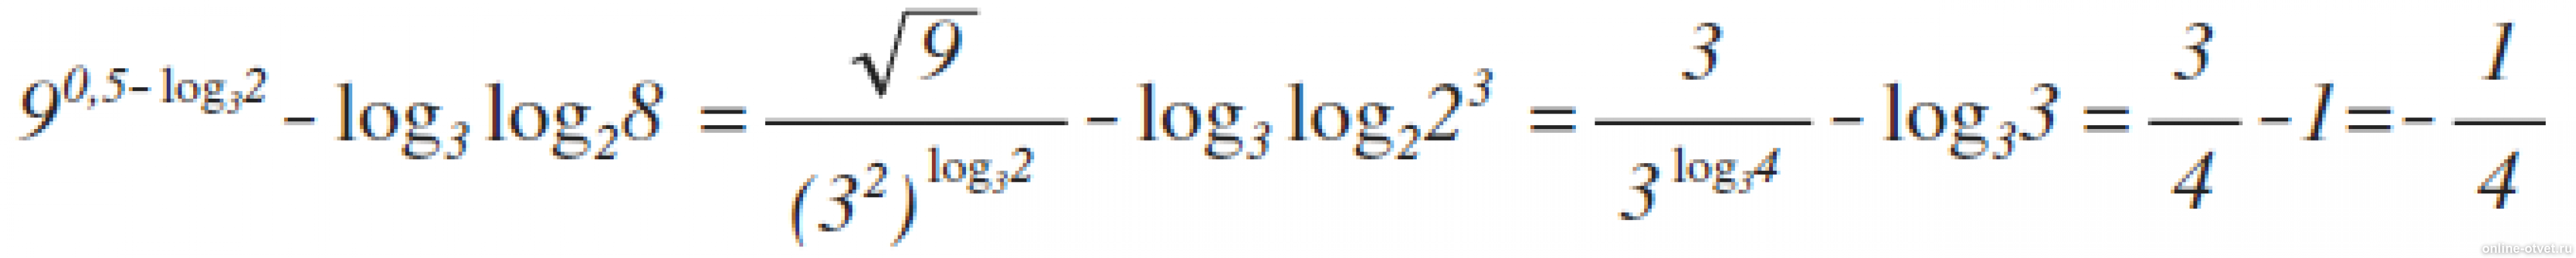 9 В степени 0.5 log 3 2 log3. 8 В степени 2 + log. Log x по основанию y в степени 2. Лог x по основанию корень из 3.